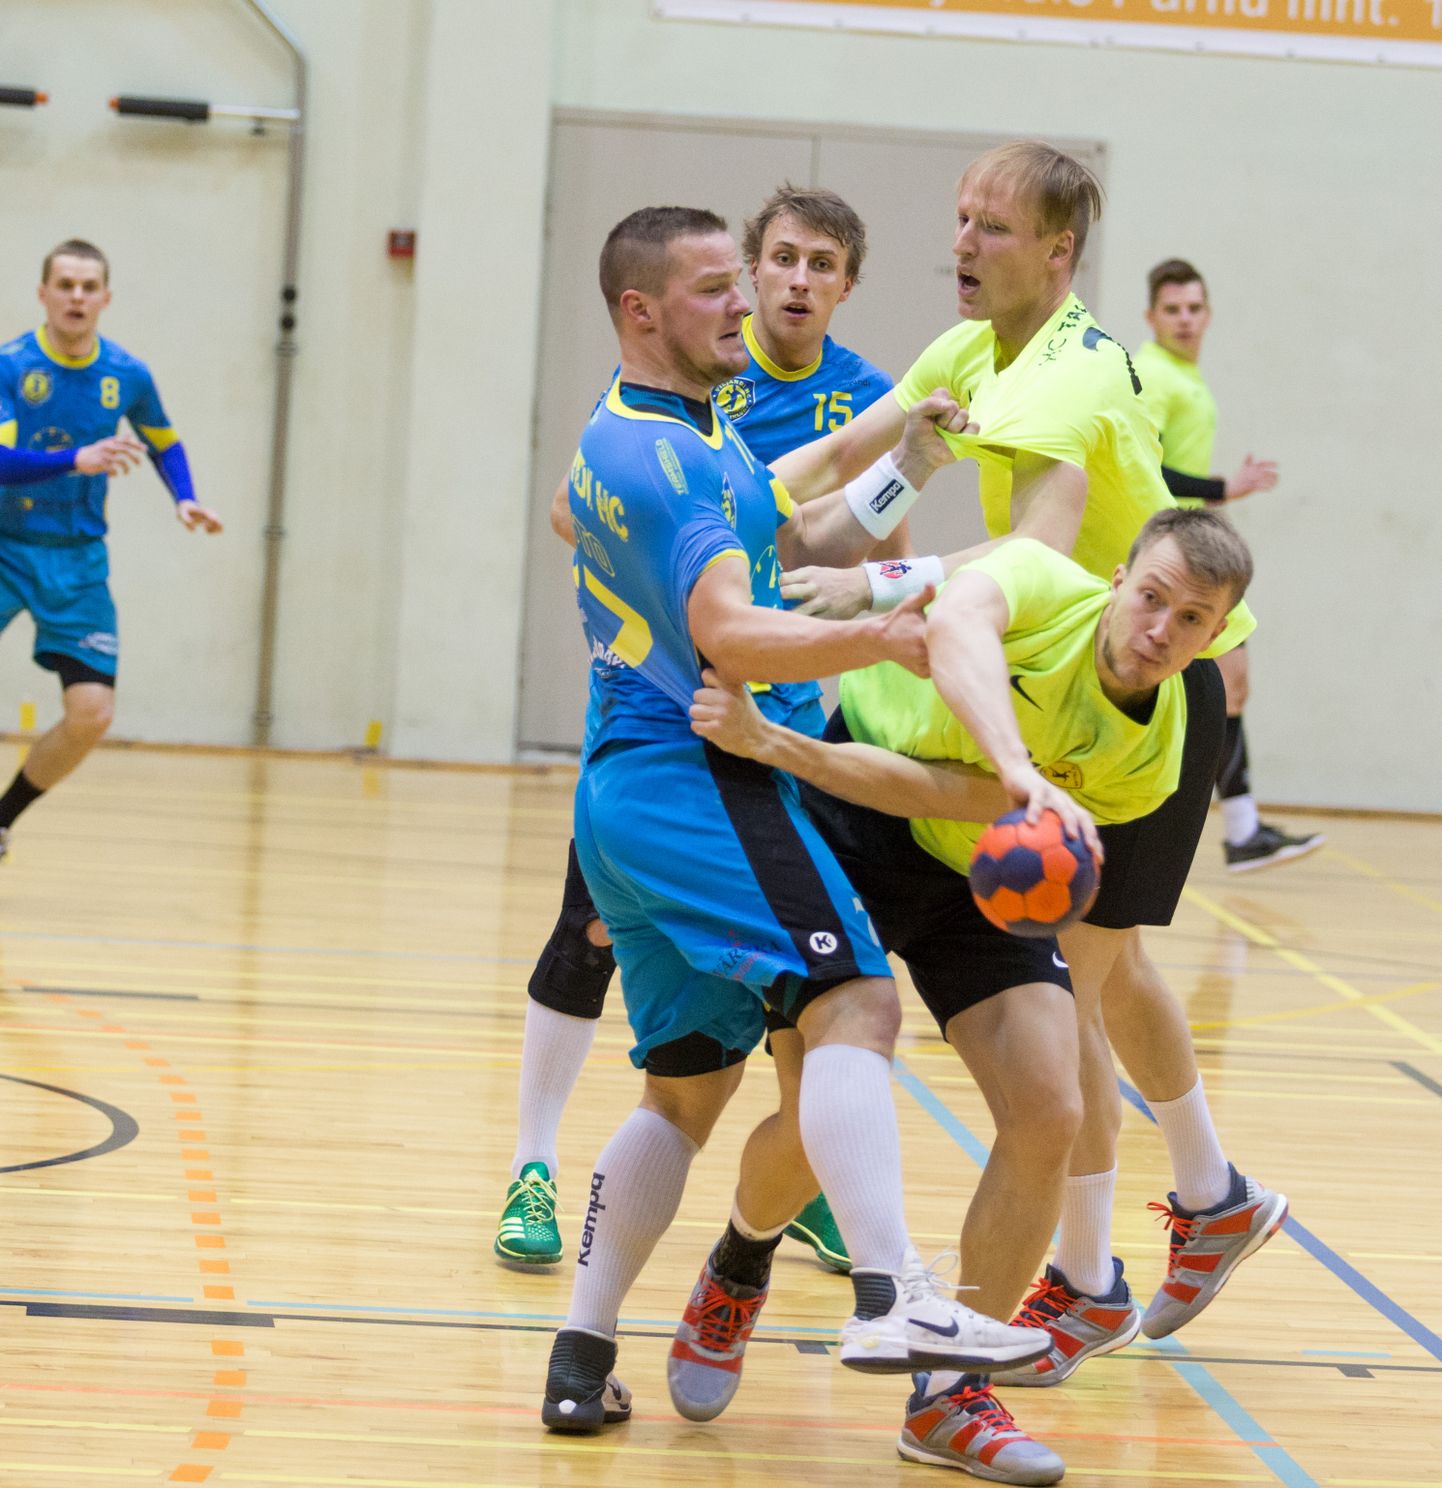 Meistriliiga põhiturniiril lõppesid mõlemad HC Tallinna ja Viljandi HC duellid mulkide üheväravalise võiduga. Nüüd ollakse vastamisi pronksiseerias.